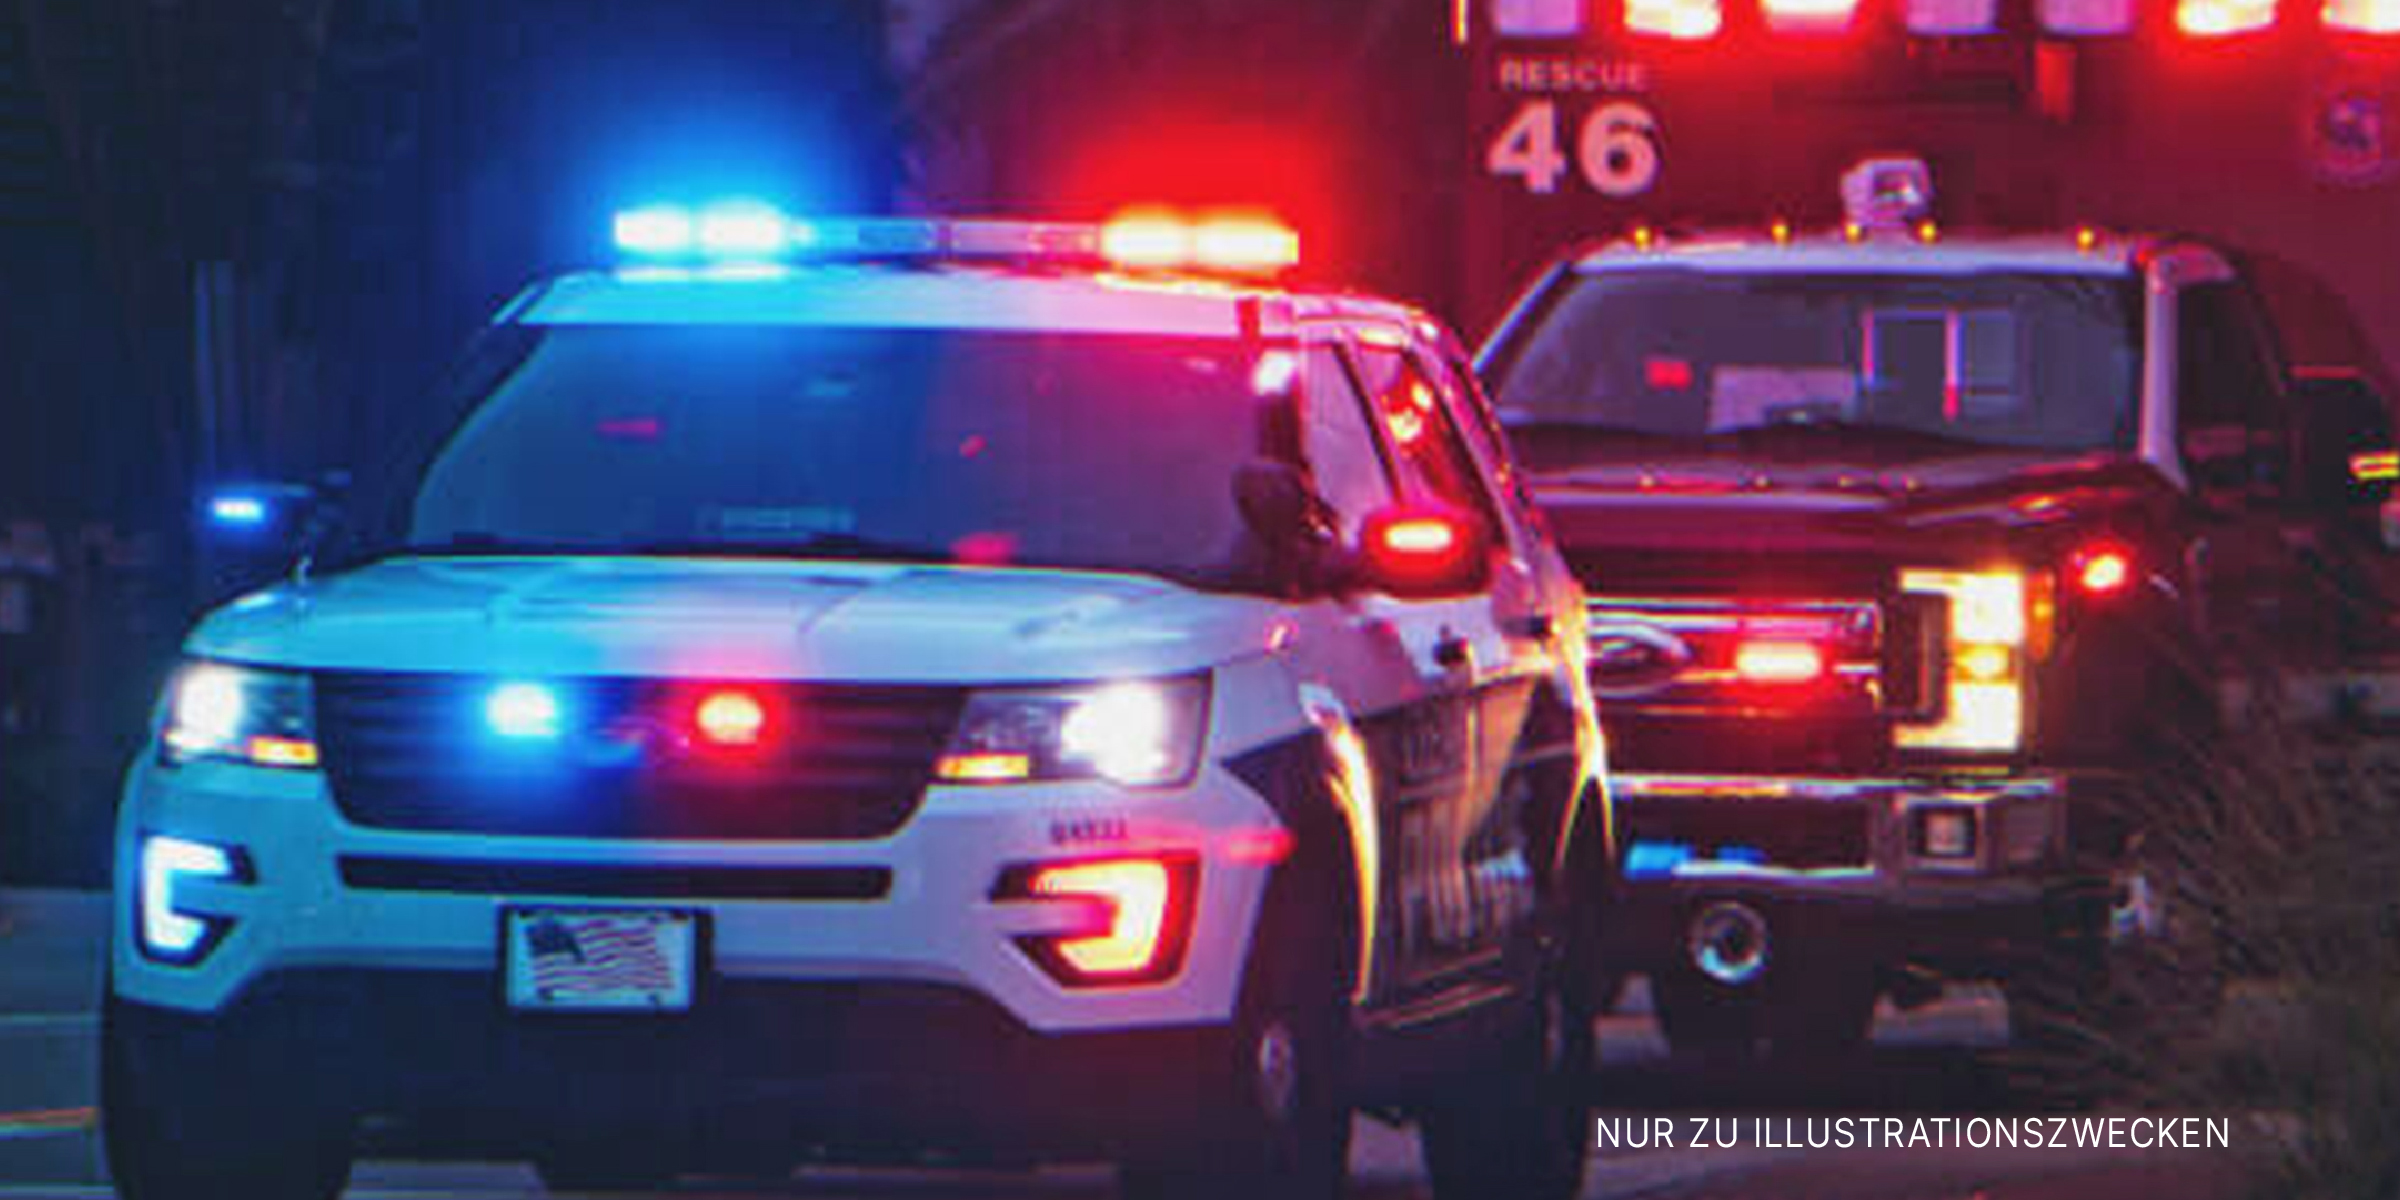 Polizeifahrzeuge auf der Straße | Quelle: Shutterstock